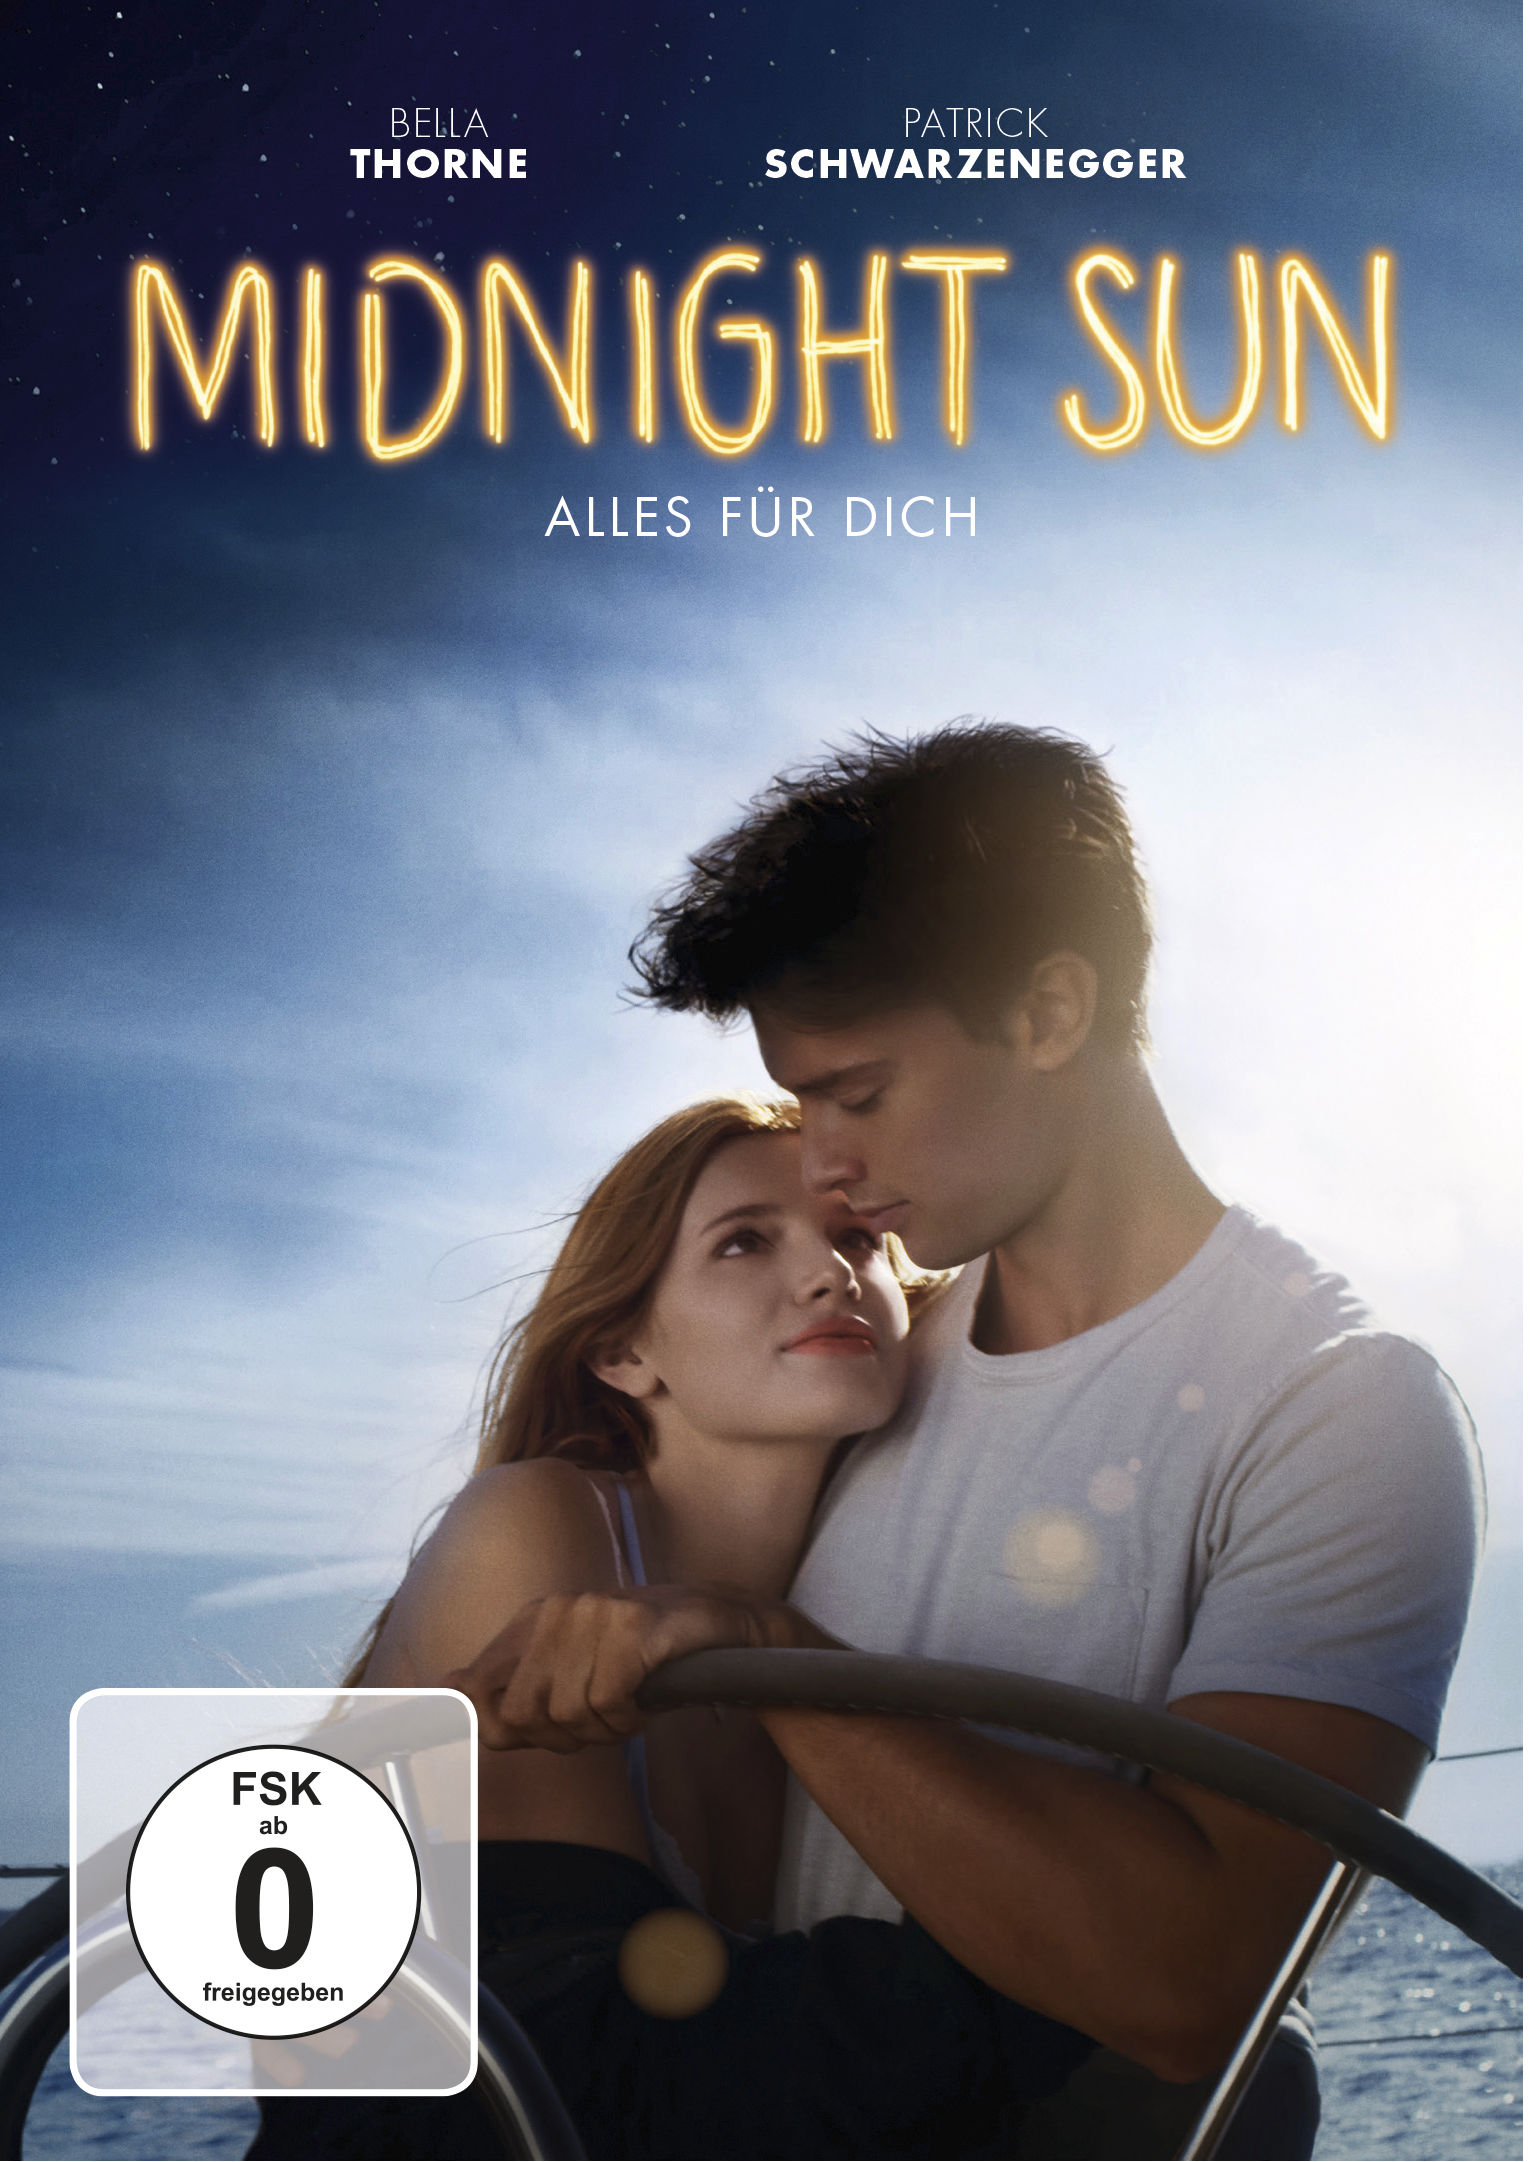 Alles DVD für Sun - Midnight Dich